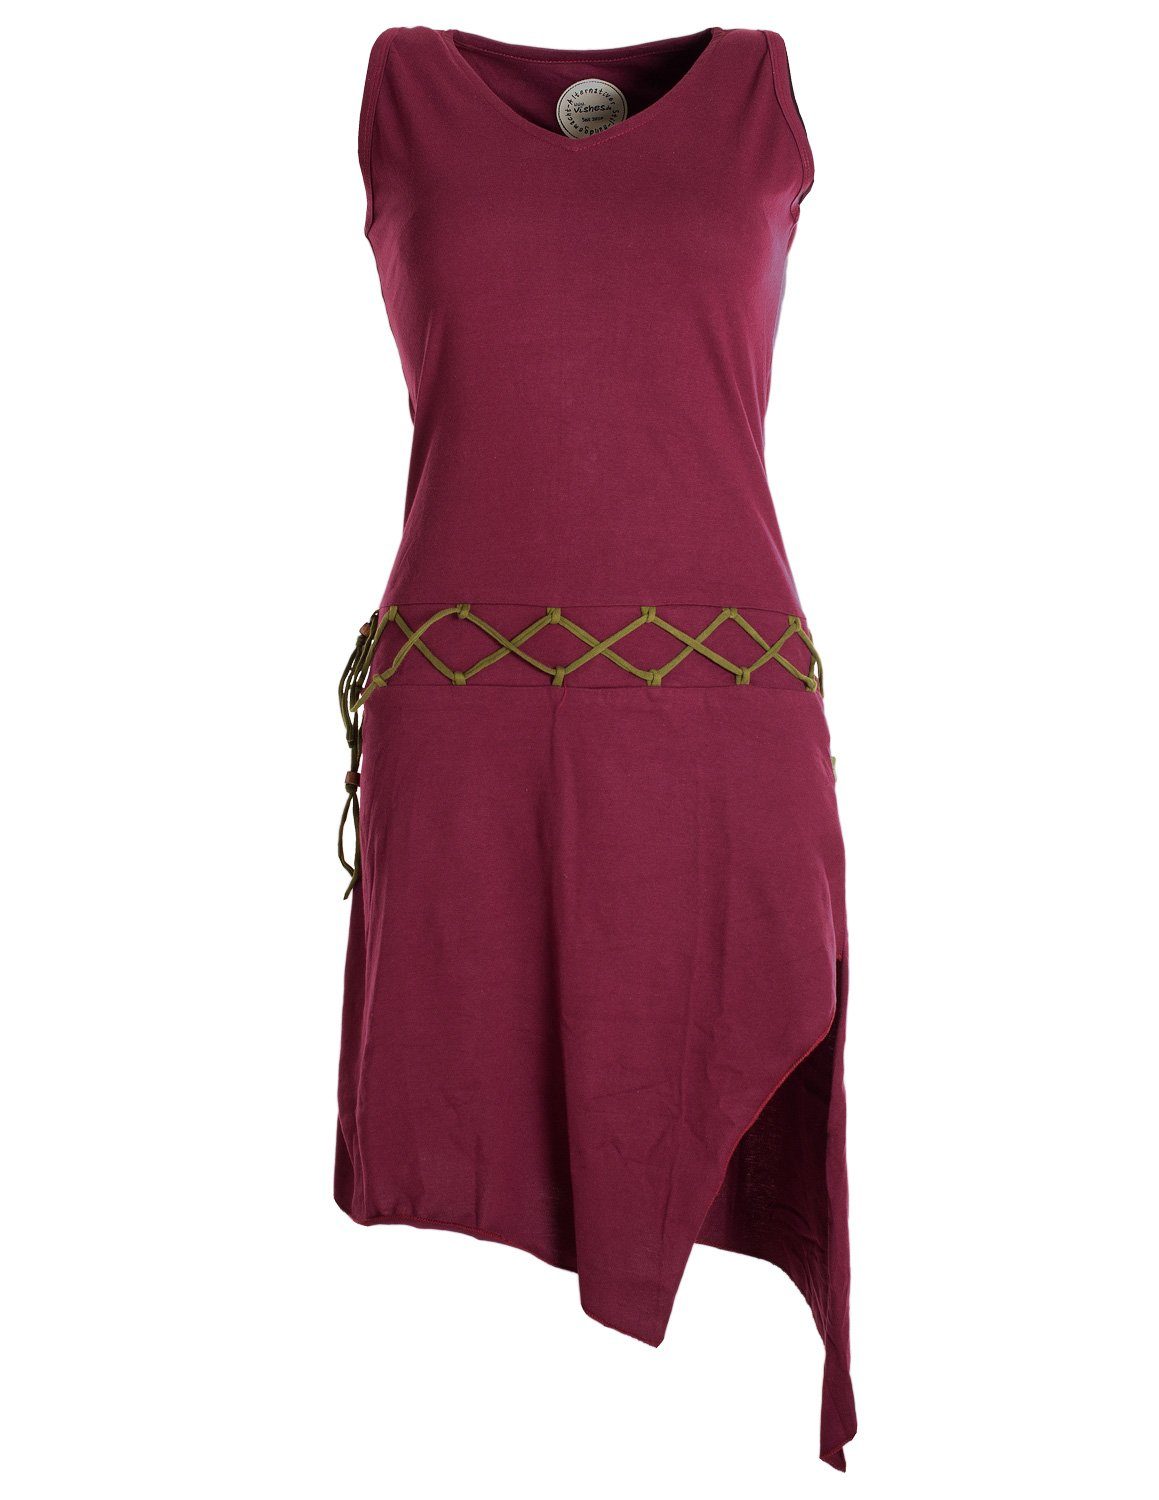 Vishes Sommerkleid Ärmelloses Kleid asymmetrisch Beinausschnitt Gürtel-Schnürung Hippie, Boho, Goa Elfen Style dunkelrot